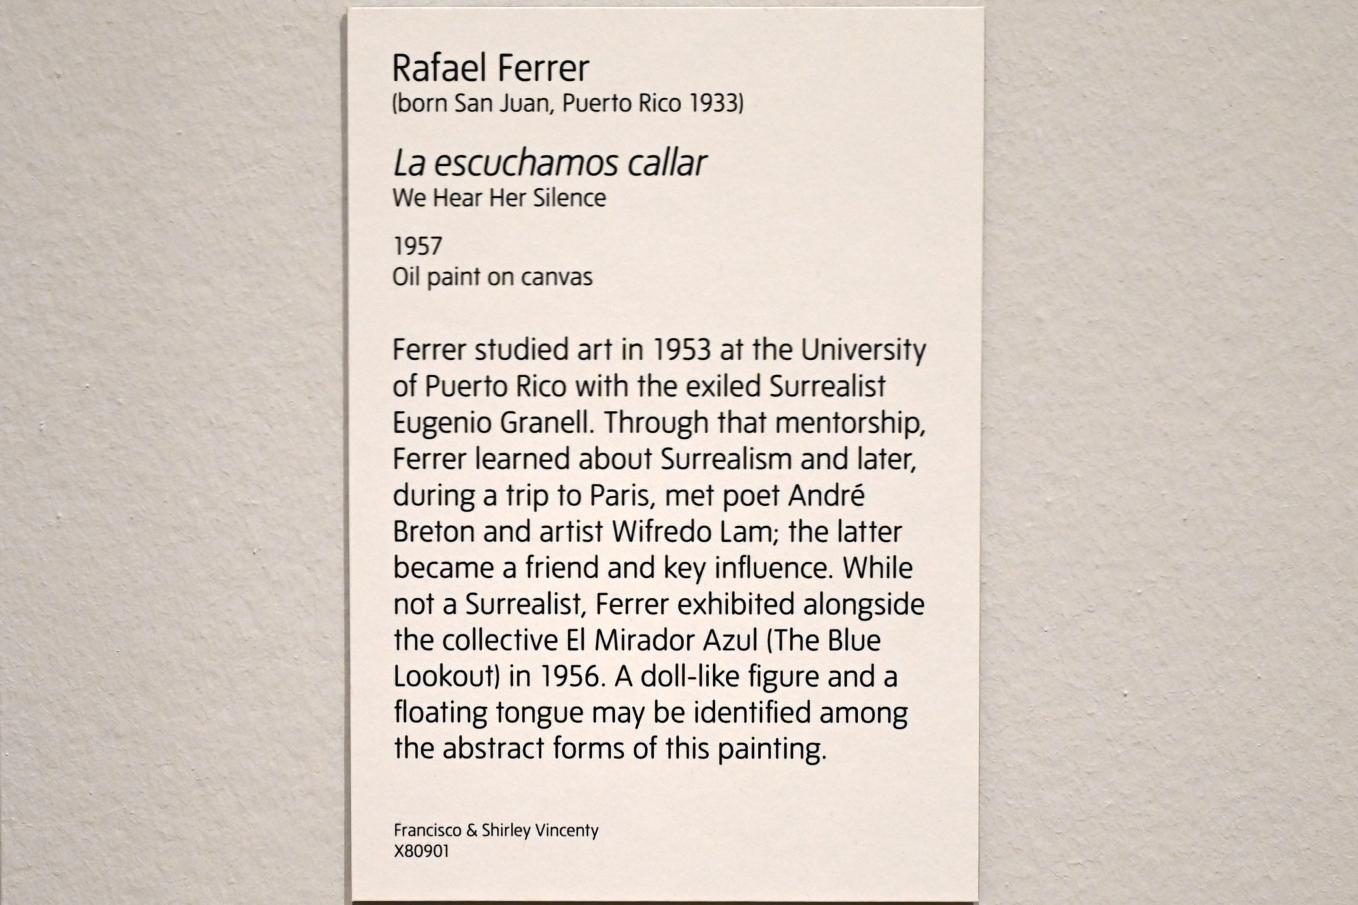 Rafael Ferrer (1957), Wir hören ihr Schweigen, London, Tate Modern, Ausstellung "Surrealism Beyond Borders" vom 24.02.-29.08.2022, Saal 7, 1957, Bild 2/2